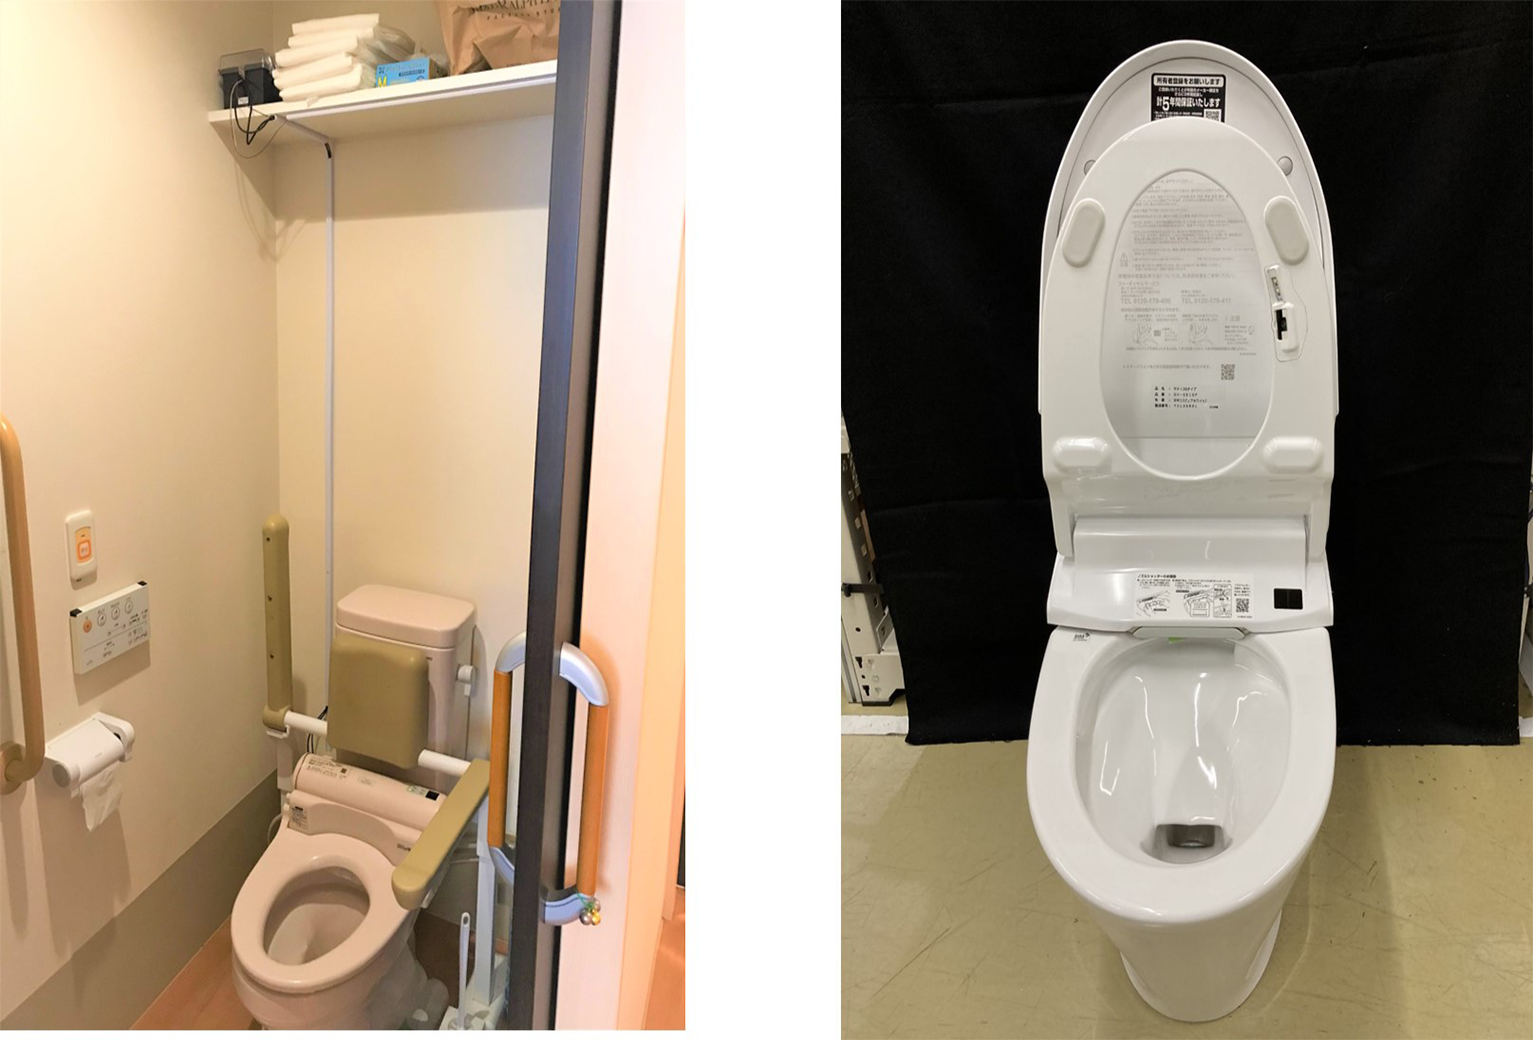 高齢者施設におけるトイレ利用の実証実験開始。IoTやAIを活用し、QOLの向上・業務負荷低減を目指す